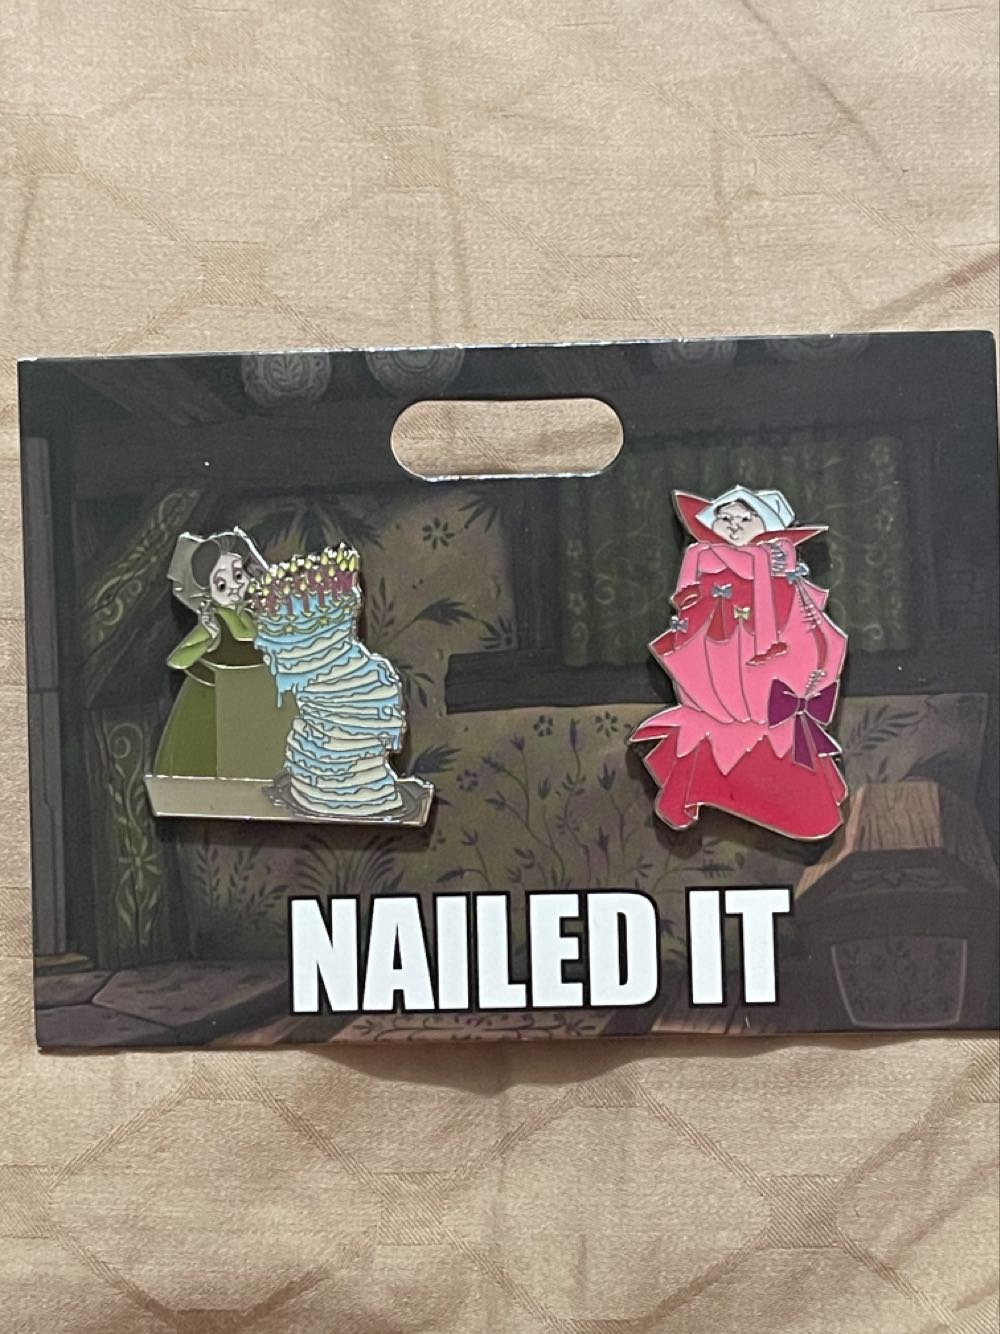 Fauna “Nailed It” 2 Pin Set - Disney Parks Pin - Rack pin collectible [Barcode 400928613397] - Main Image 2